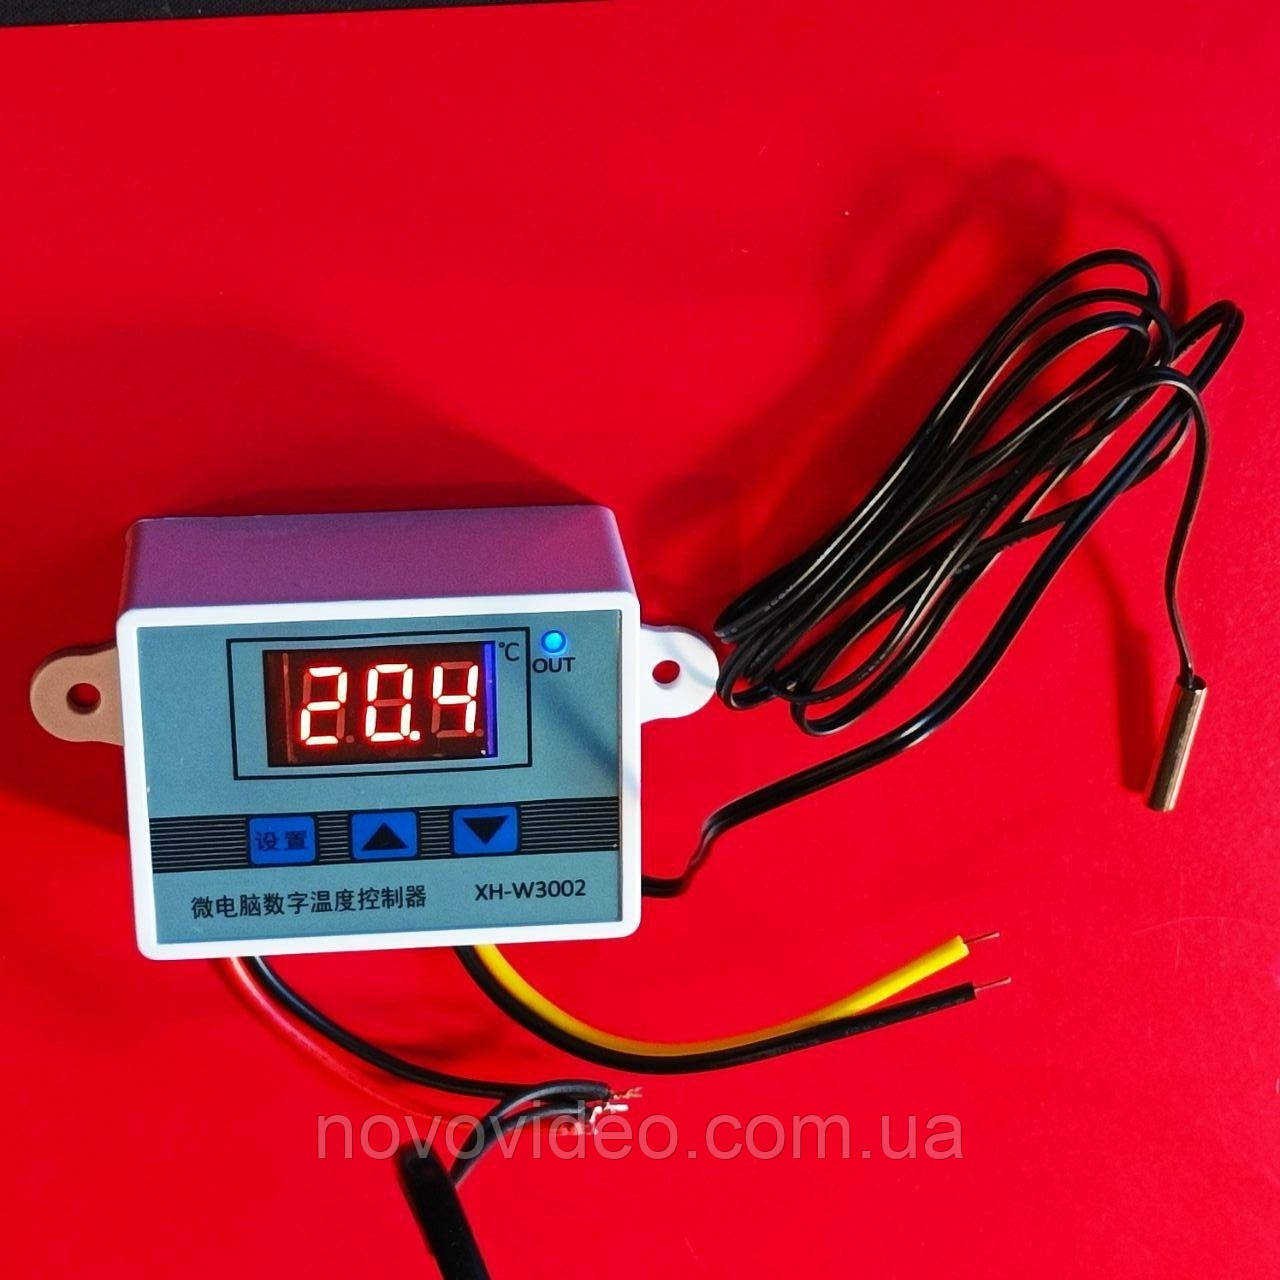 Терморегулятор цифровий XH-W3002 на 220В, 1.5 кВт (-50...+110°C), з вологозахищеним датчиком